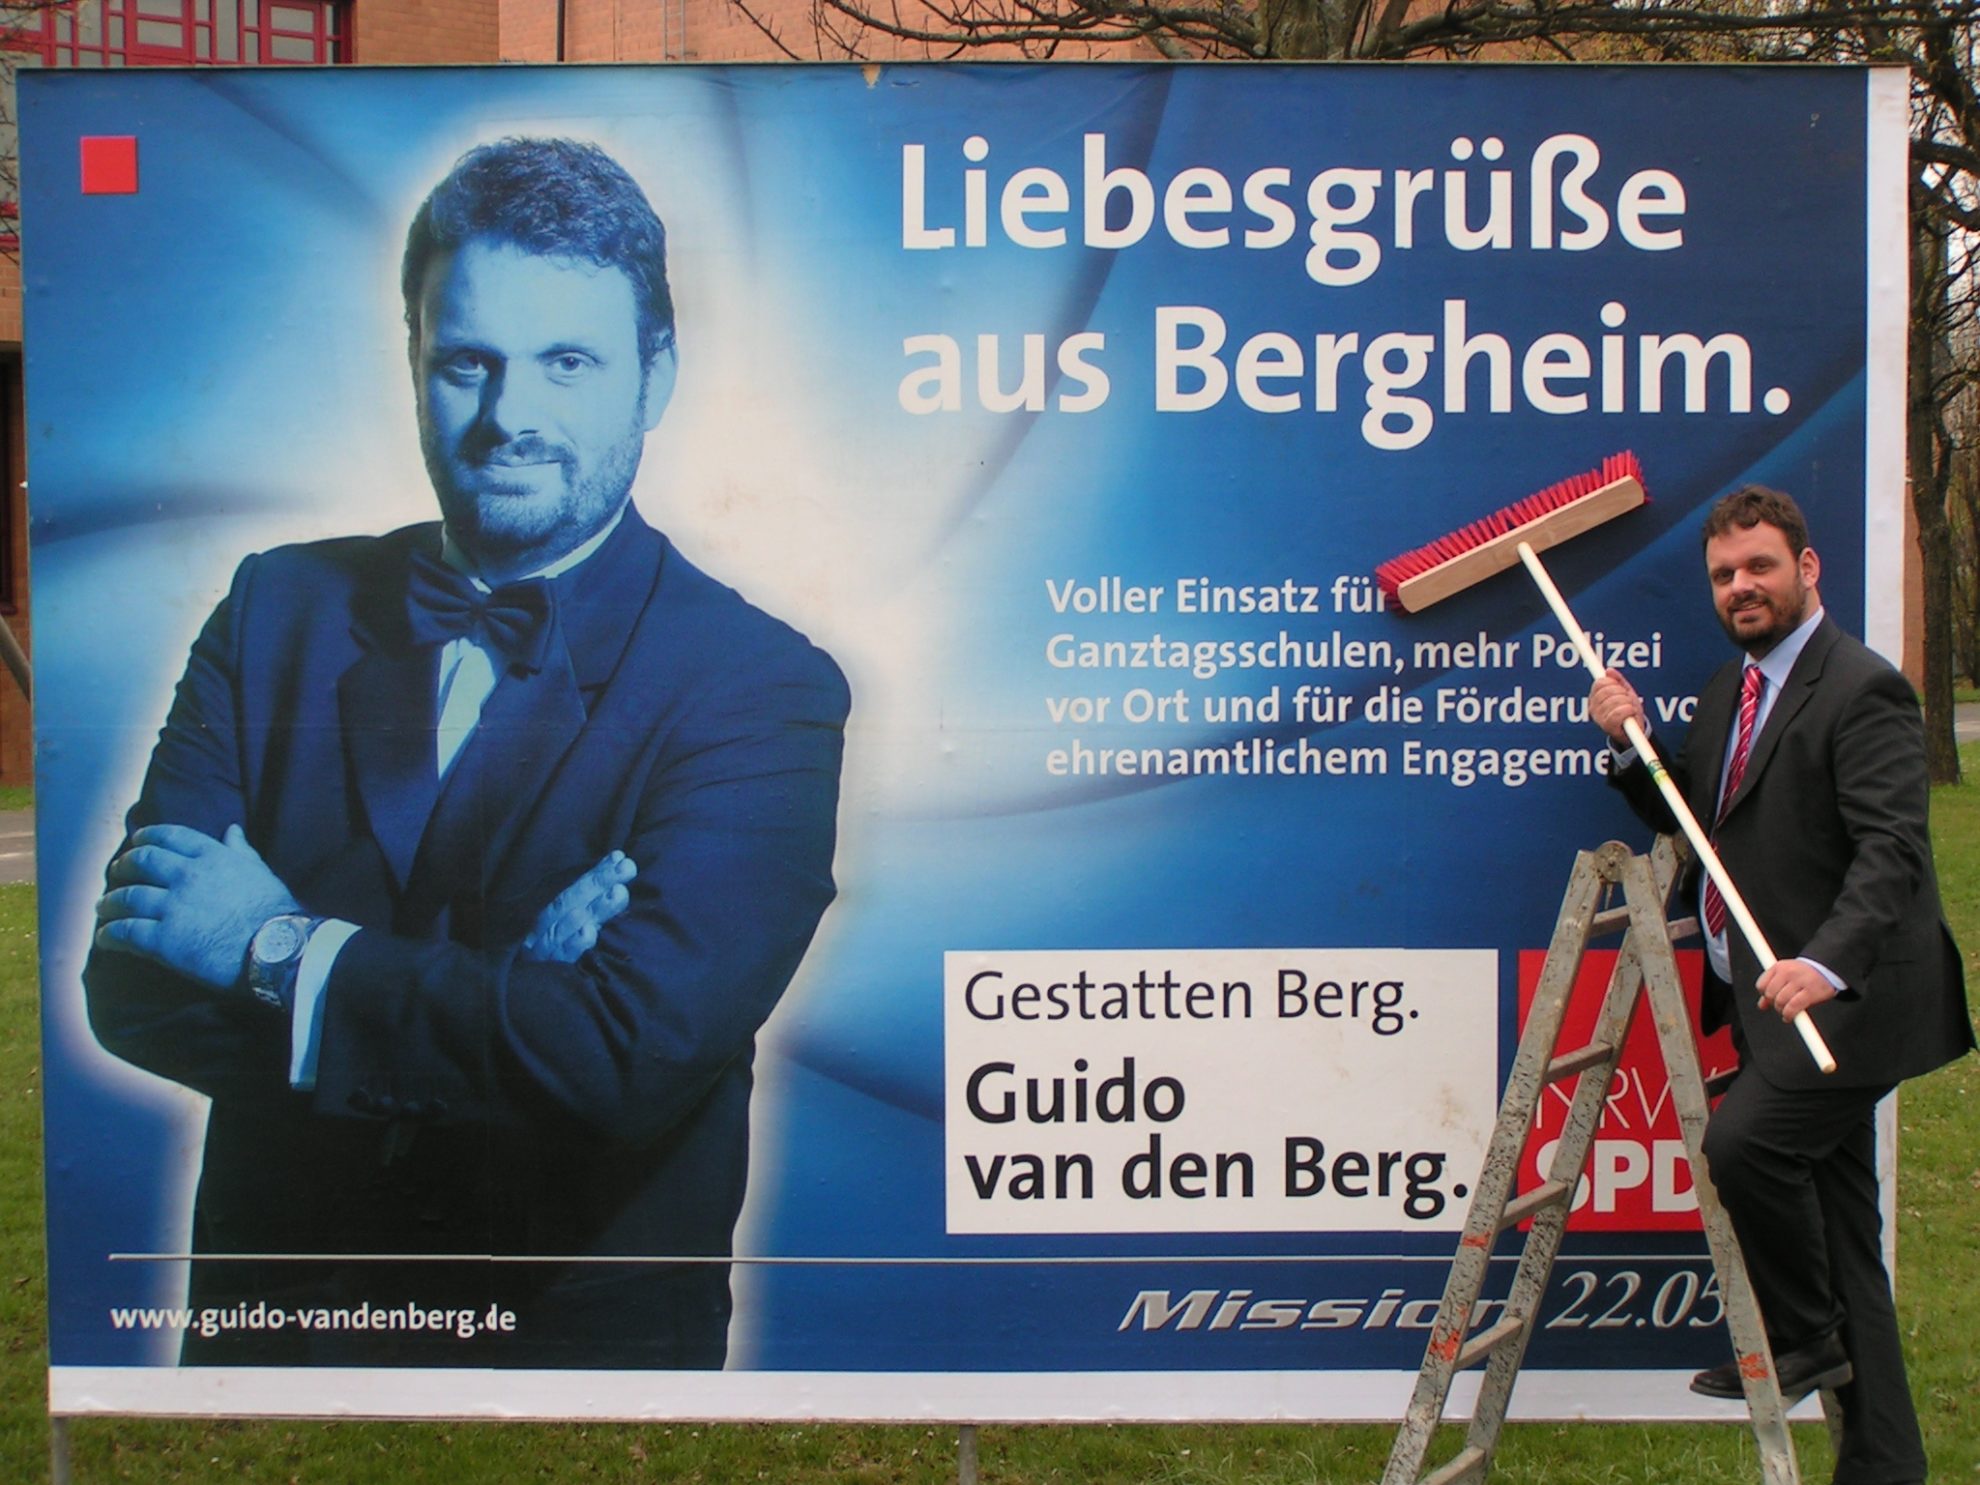 "Liebesgrüße aus Bergheim"- Guido van den Berg stellt seine Kampagne vor. (2005)